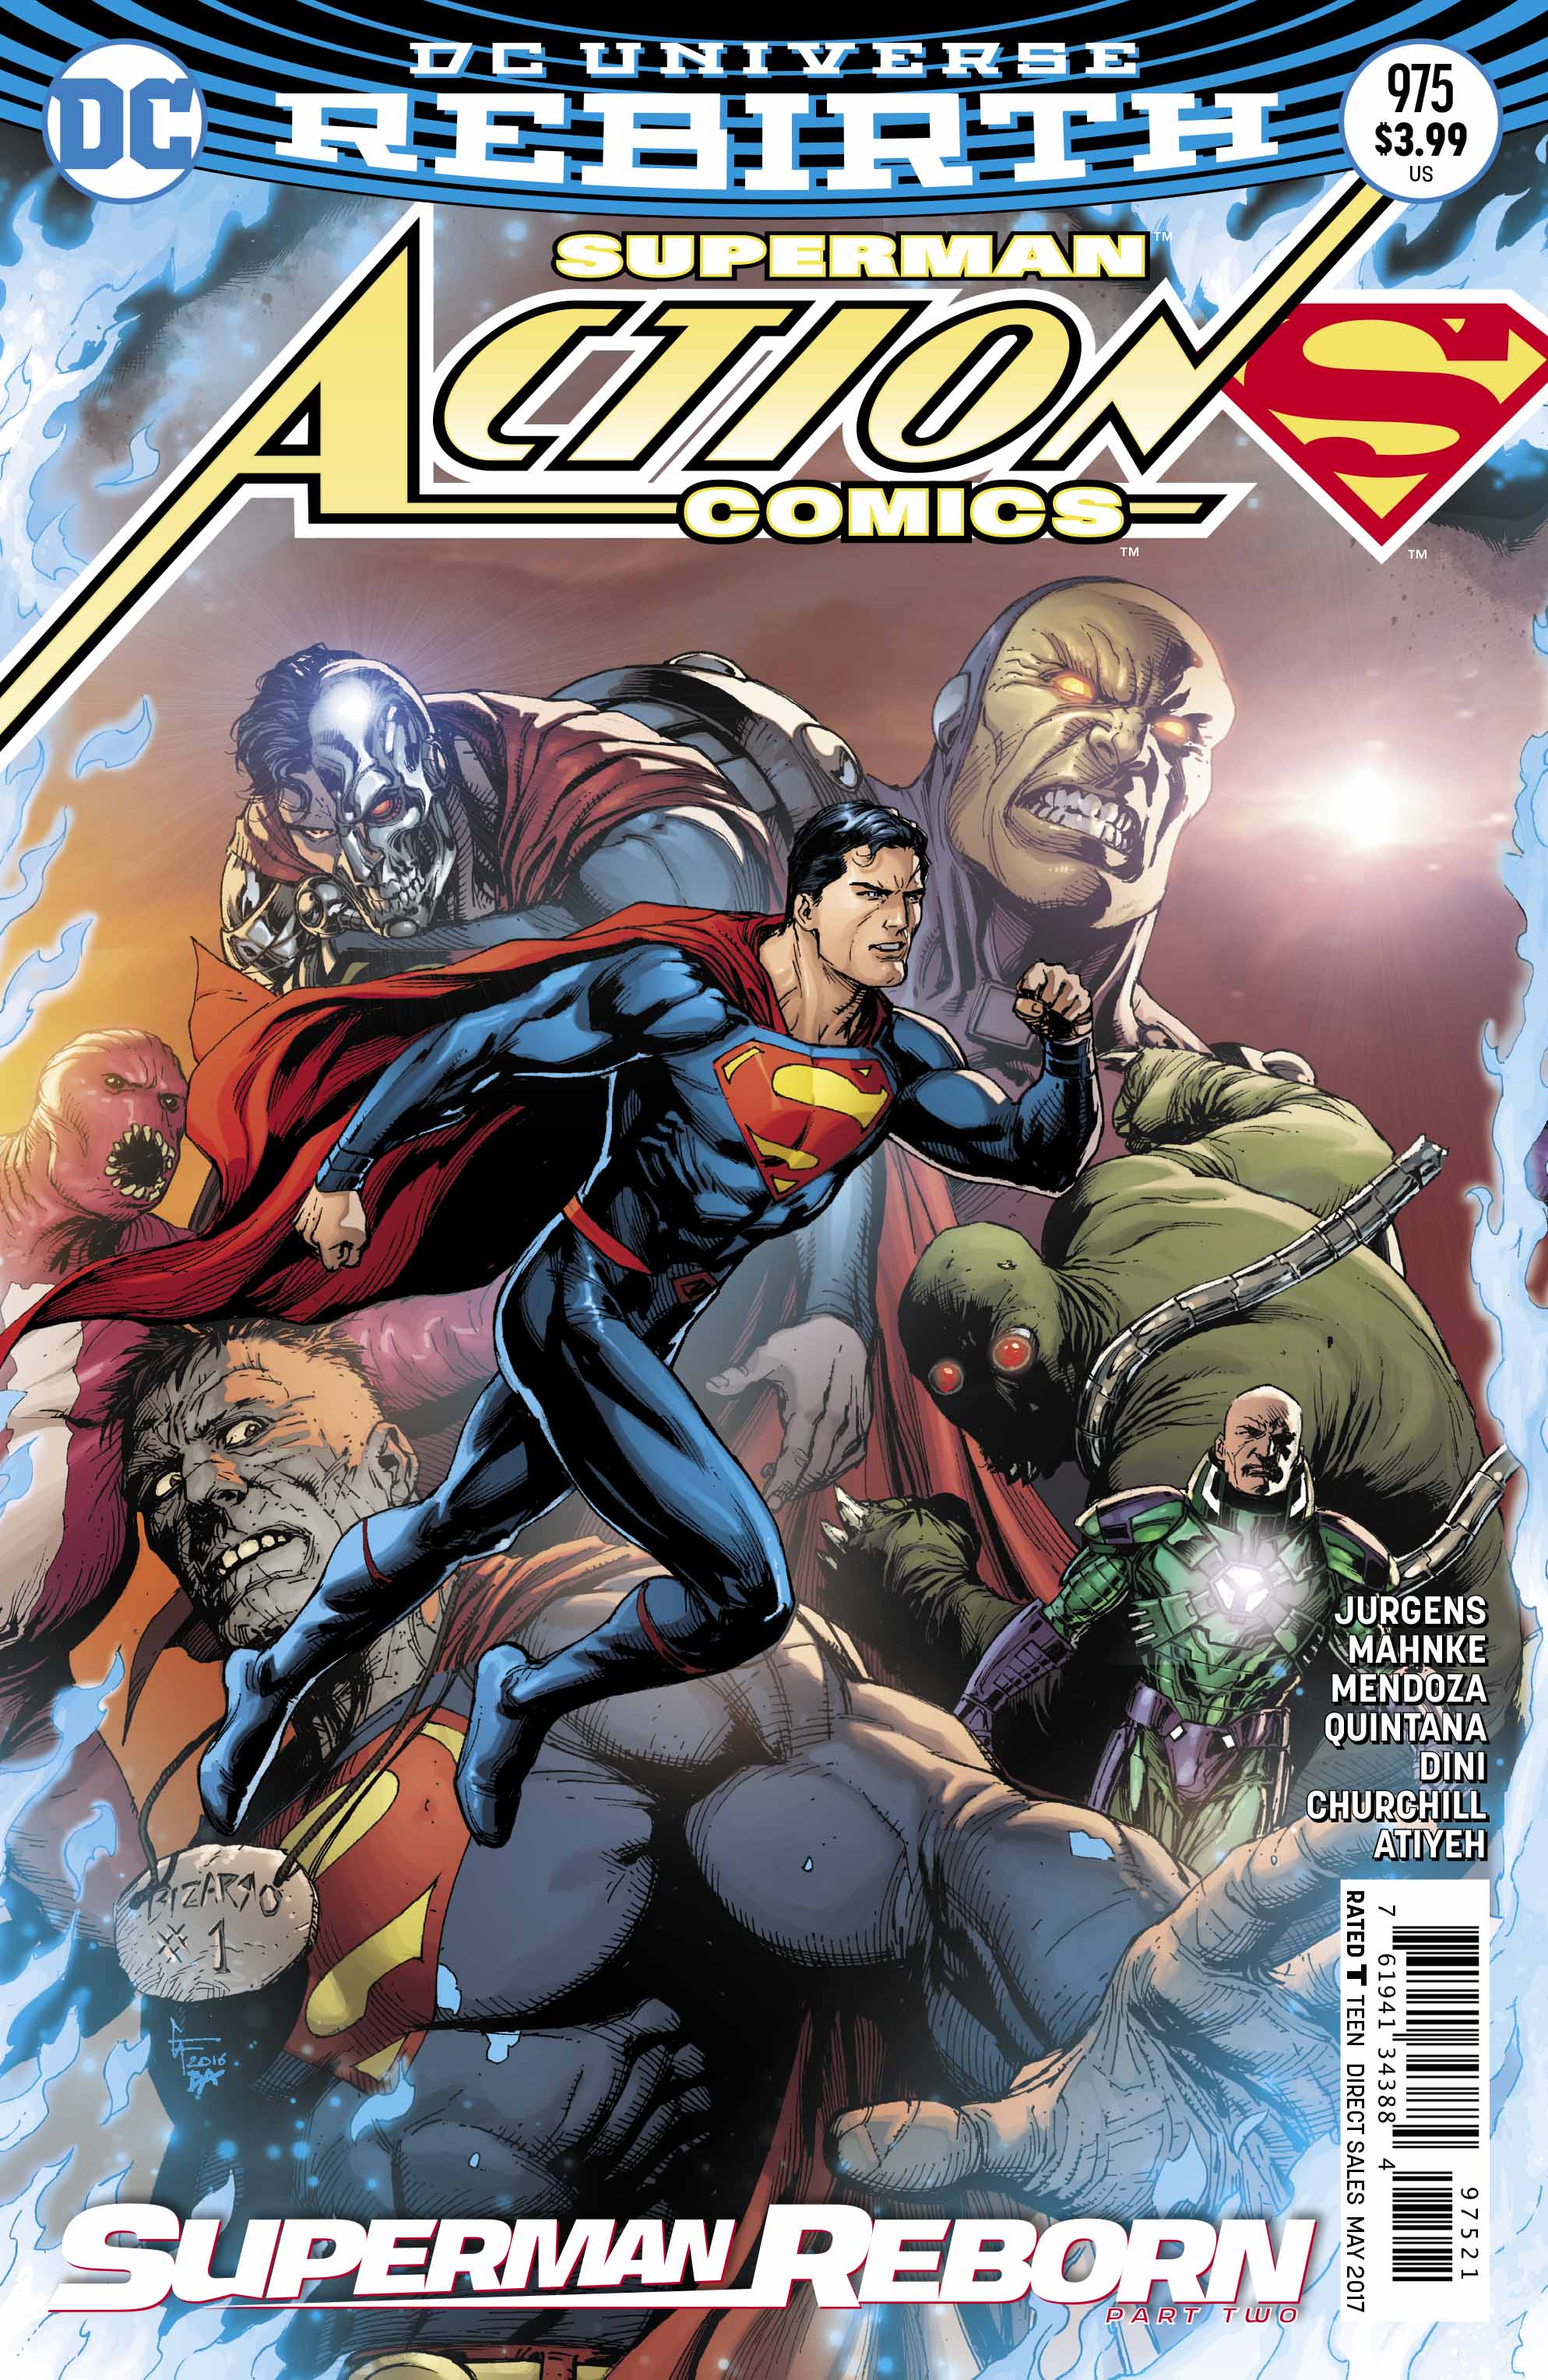 Action Comics #975 Review